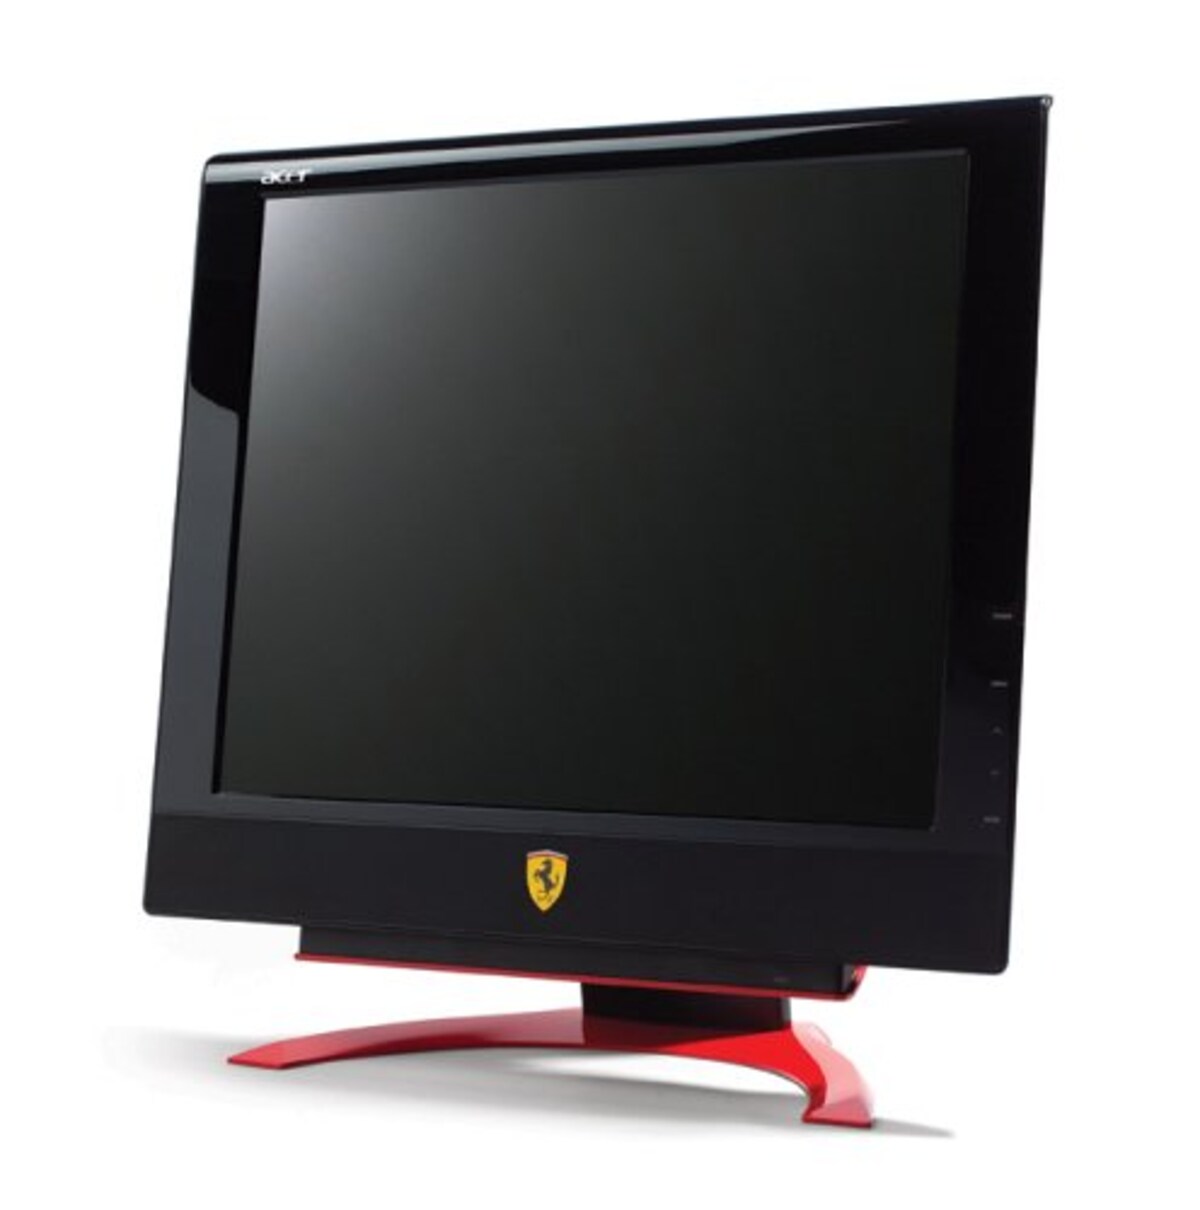  Acer Ferrari公認 19インチ液晶ディスプレイ F-19 (4系統入力, 8ms, 光沢パネル)画像2 